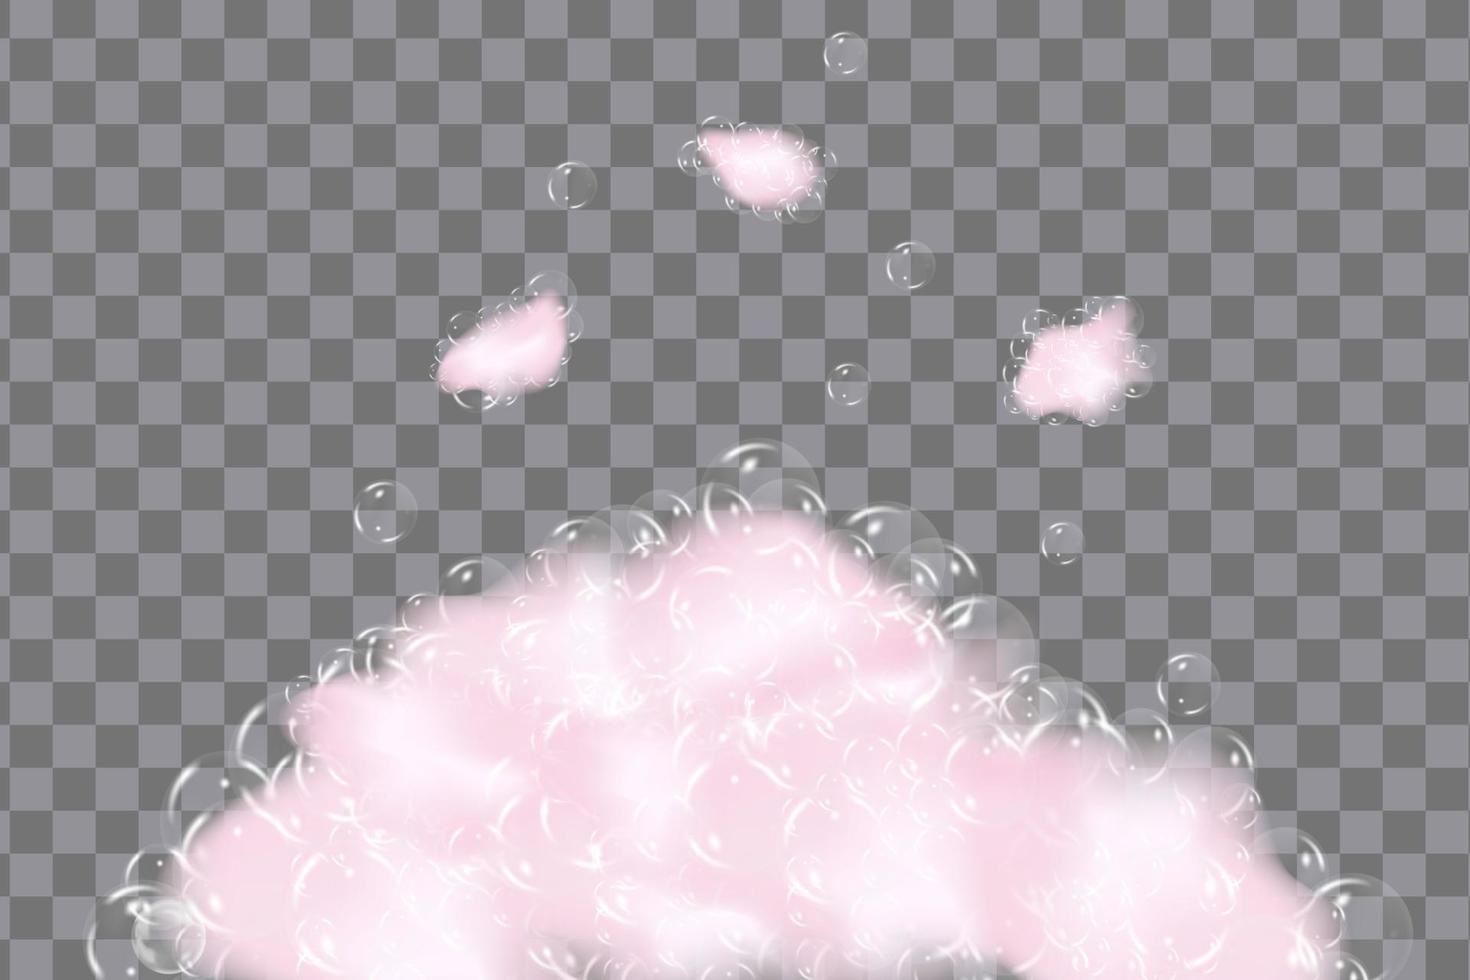 bakgrund av bad rosa skum isolerat på transparent bakgrund. schampo bubblor textur.gnistrande schampo och bad lödder, vektor illustration.